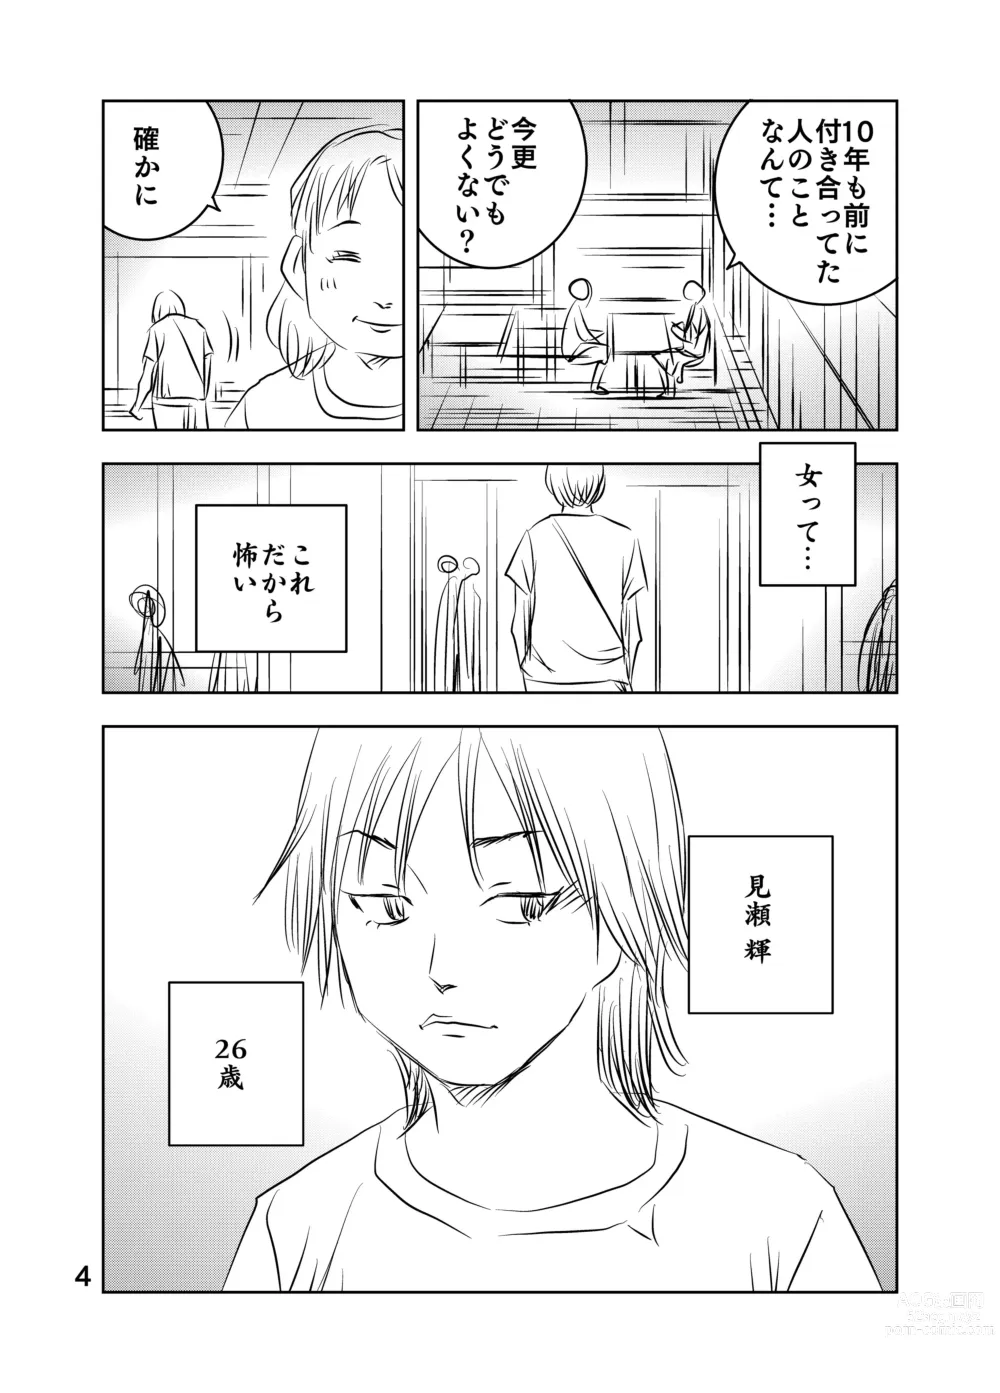 Page 5 of doujinshi Zurui Hito-tachi 2